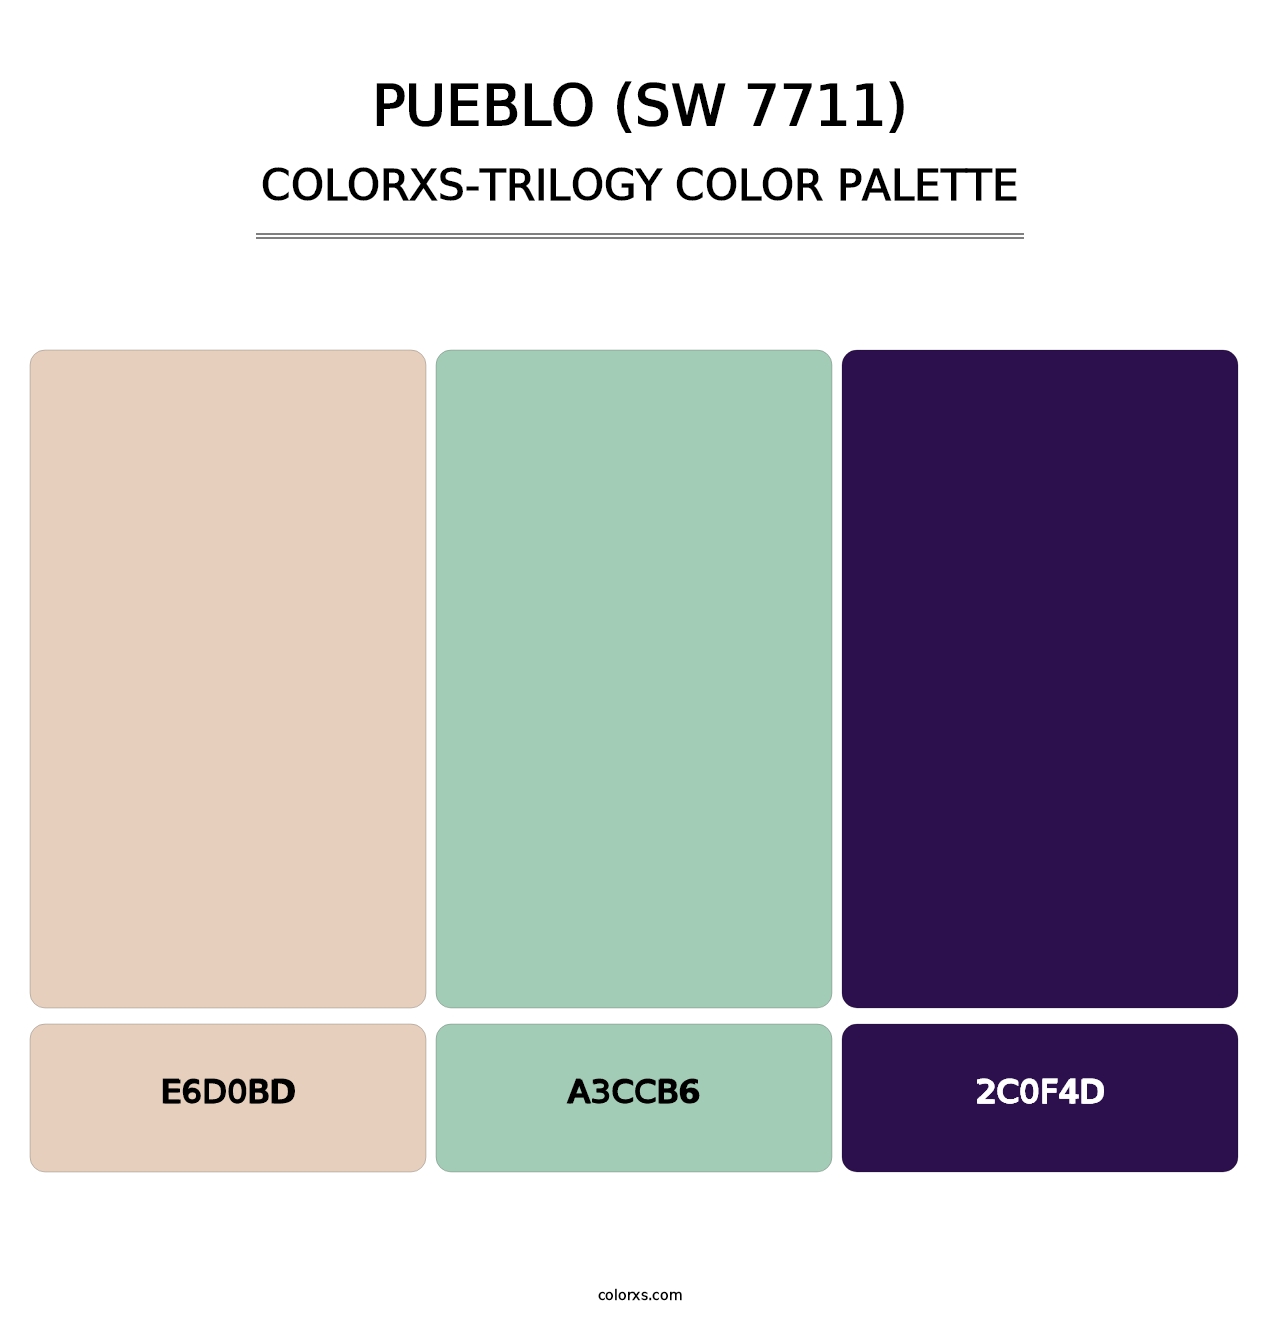 Pueblo (SW 7711) - Colorxs Trilogy Palette